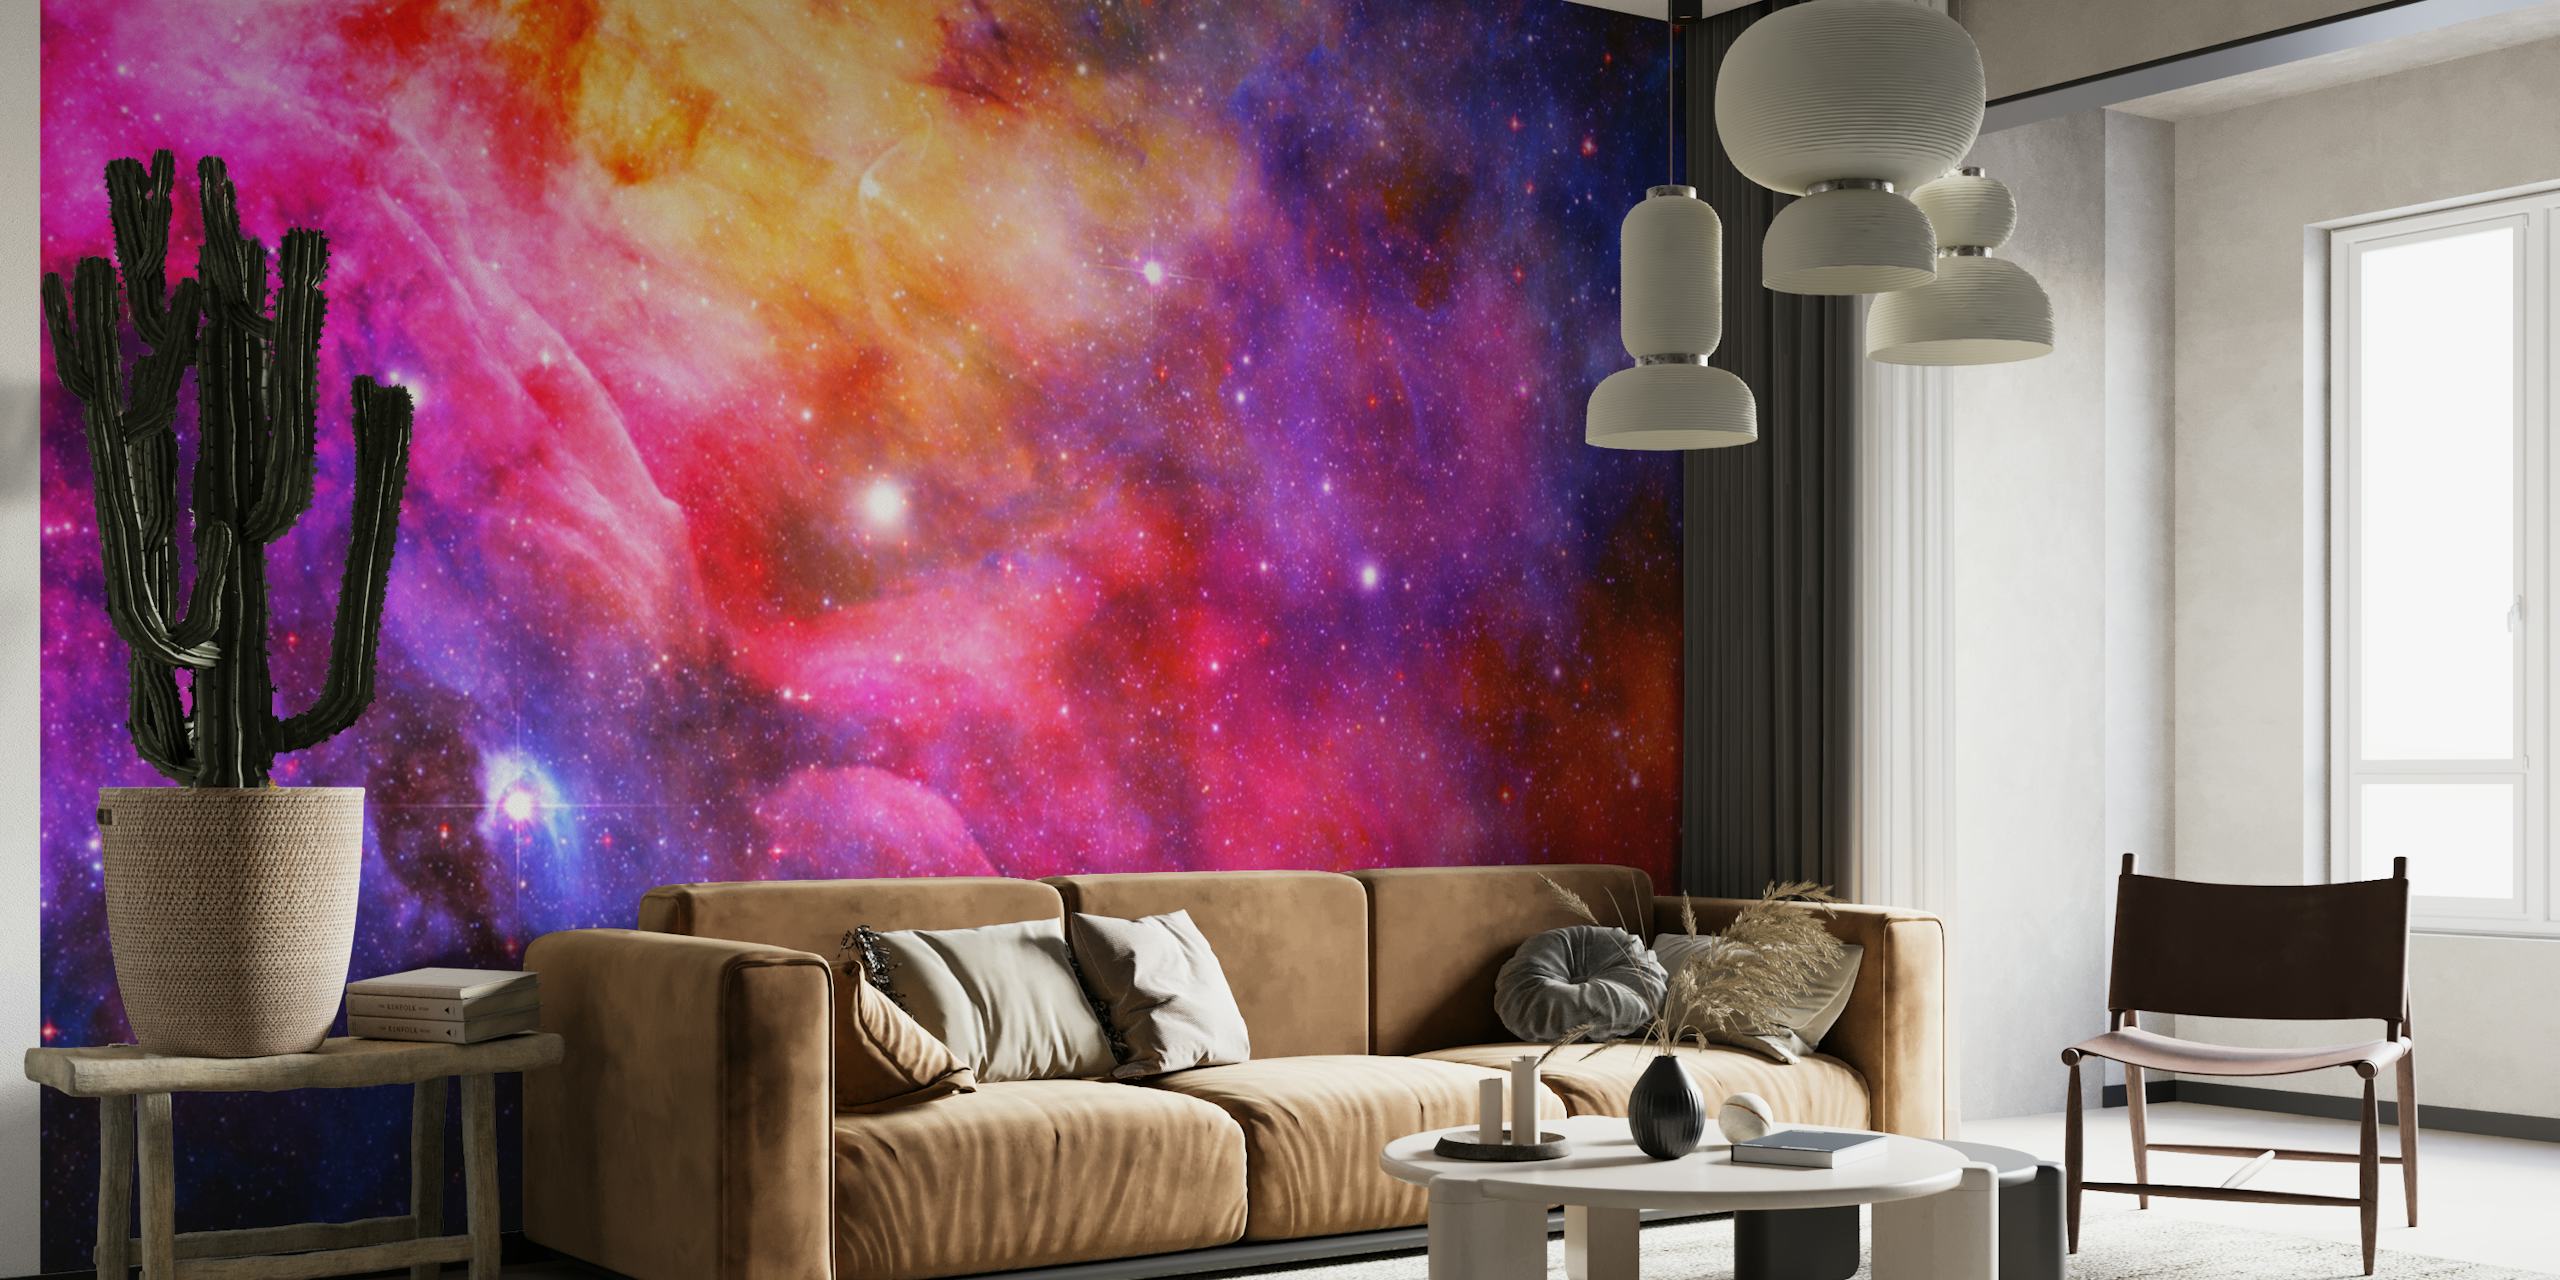 Fotomural vinílico de parede colorido da galáxia do espaço sideral com estrelas e padrões de nebulosas